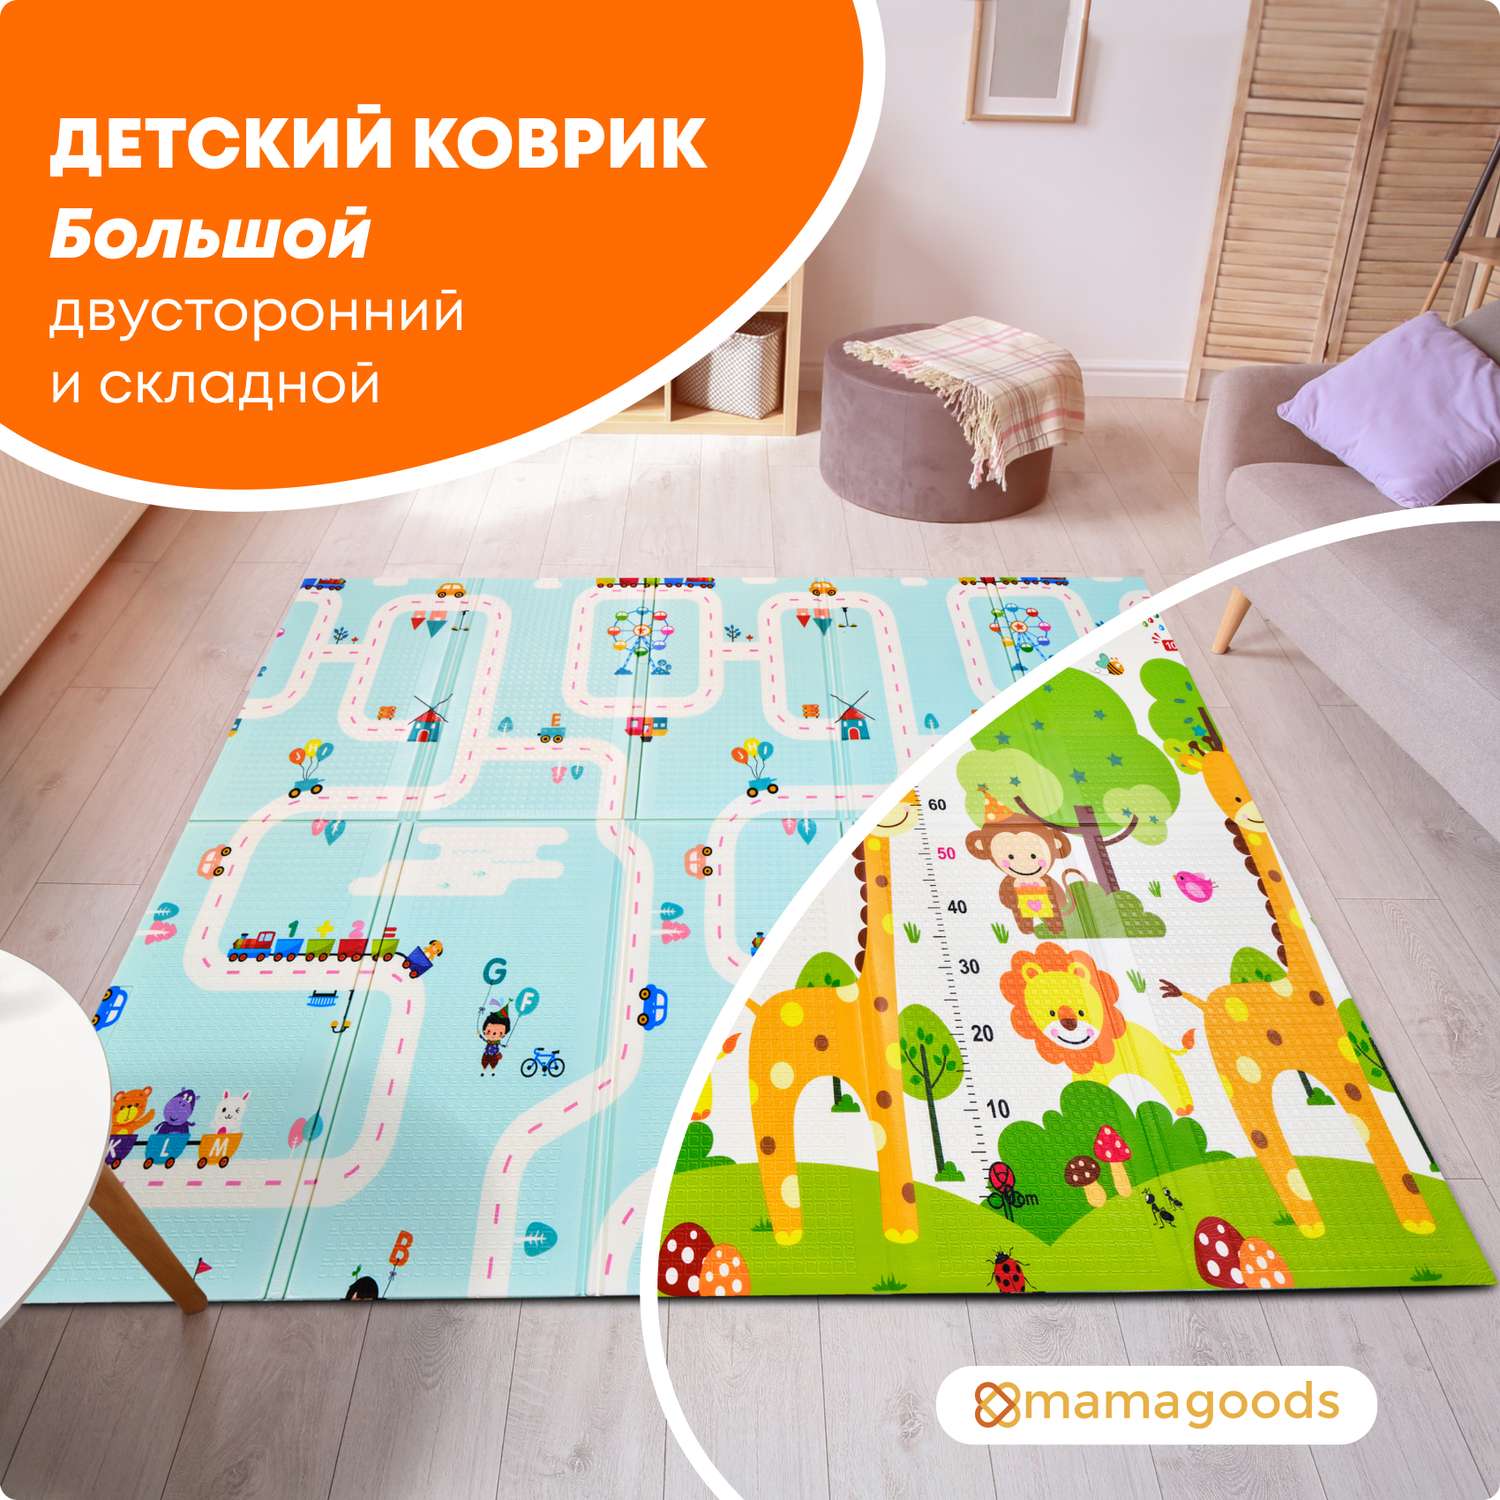 Развивающий коврик купить Киев, Харьков - детский коврик для развития